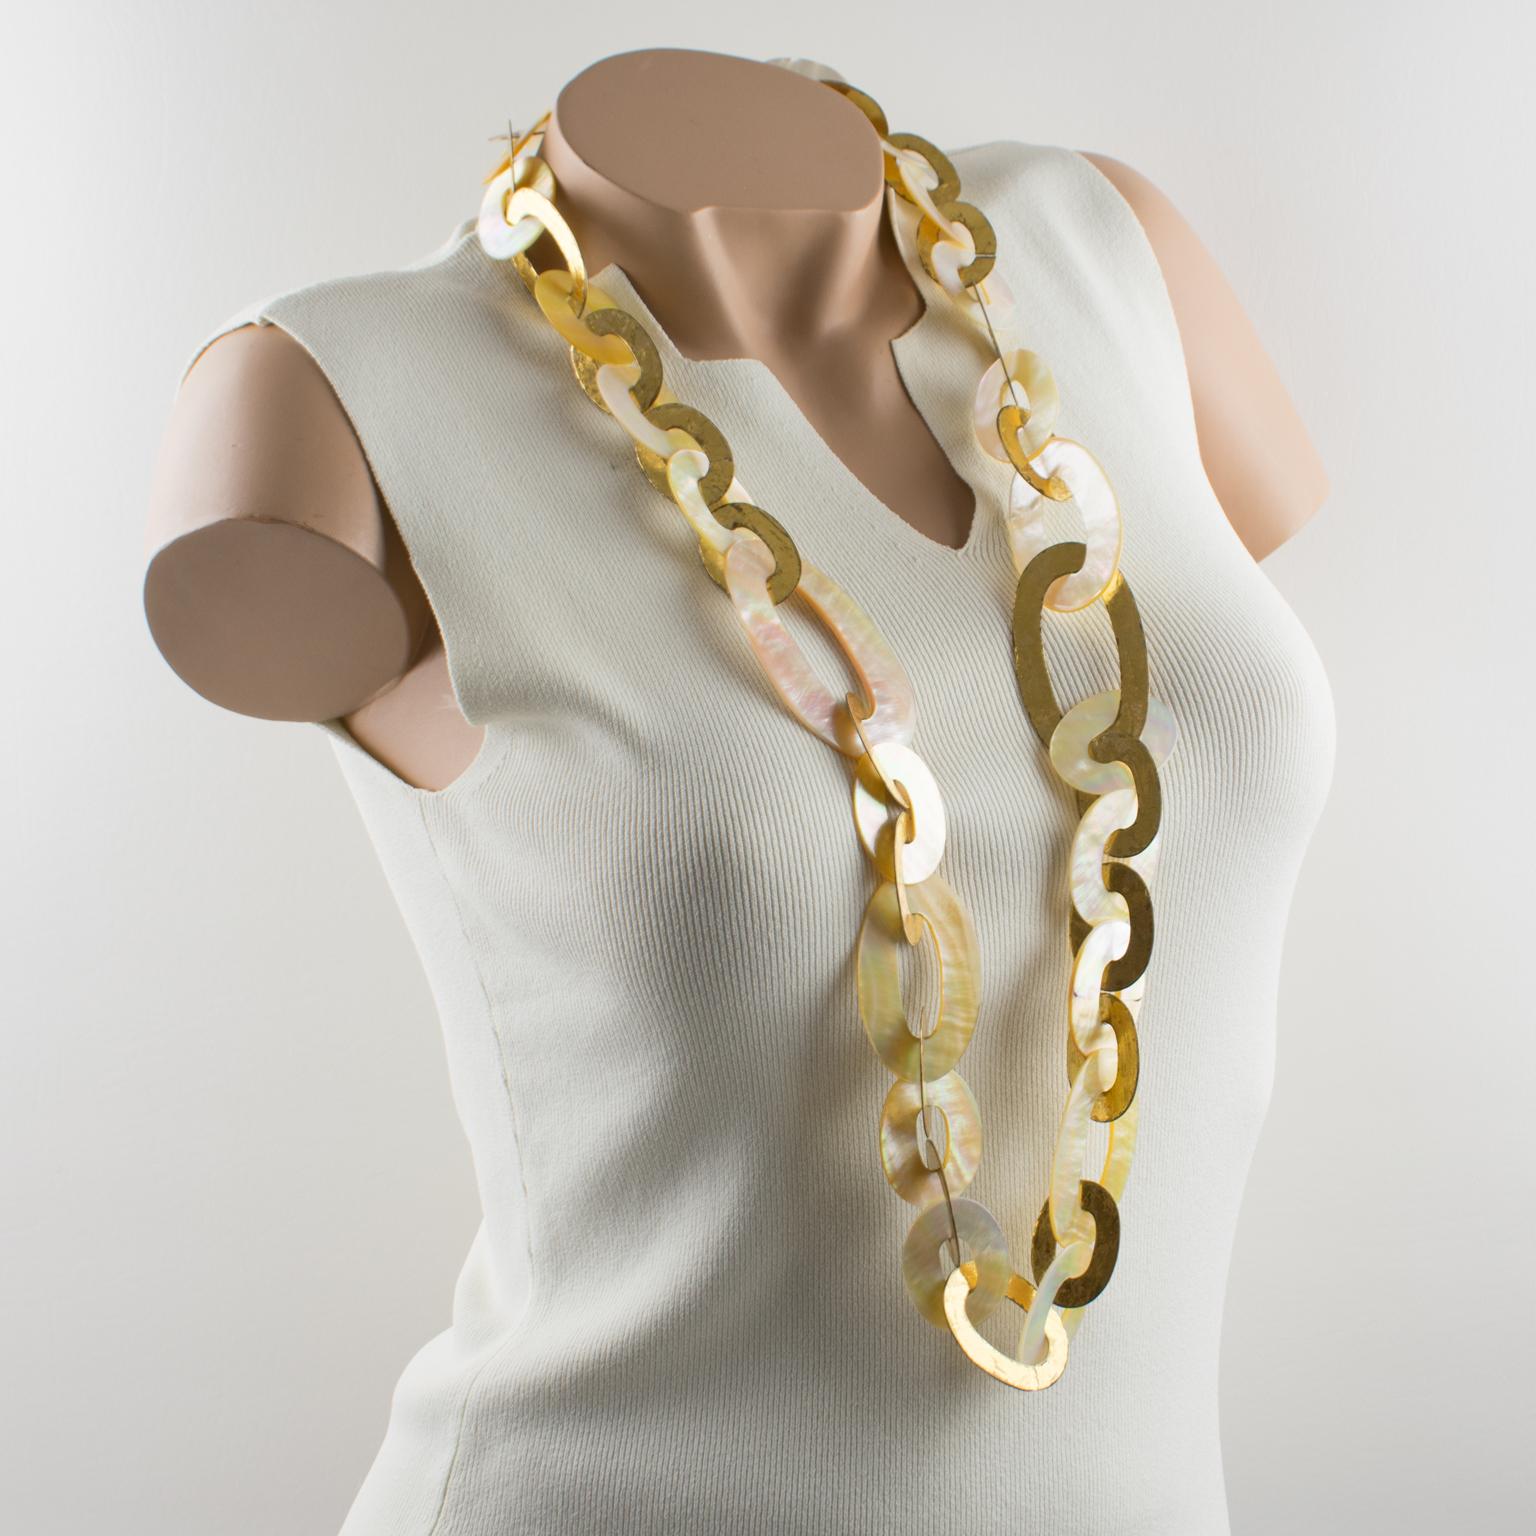 Diese raffinierte, extralange Halskette von Gerda Lyngaard für Monies zeichnet sich durch eine dimensionale Form mit geometrischen, ovalen, flachen Gliederelementen aus goldfolienbeschichtetem Metall aus, die mit Gliederelementen aus natürlichen